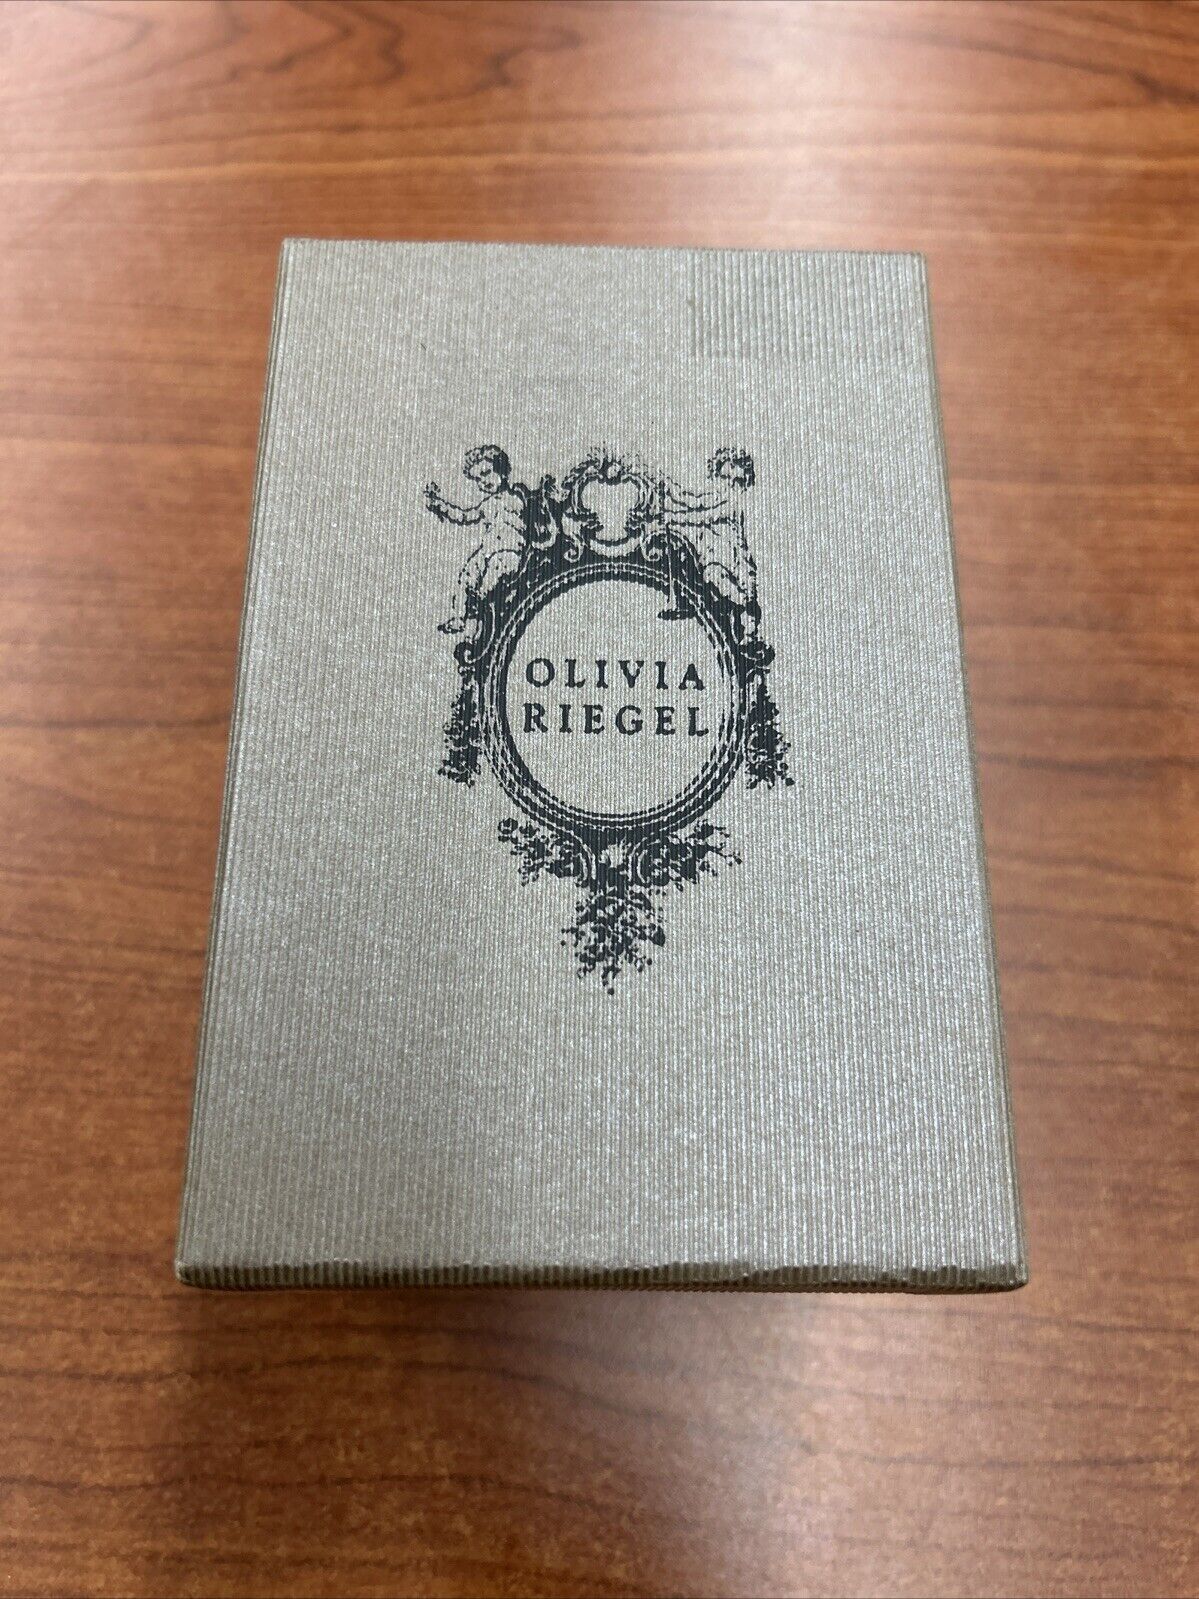 Olivia Riegel Swan Box Trinket Box New In Box 